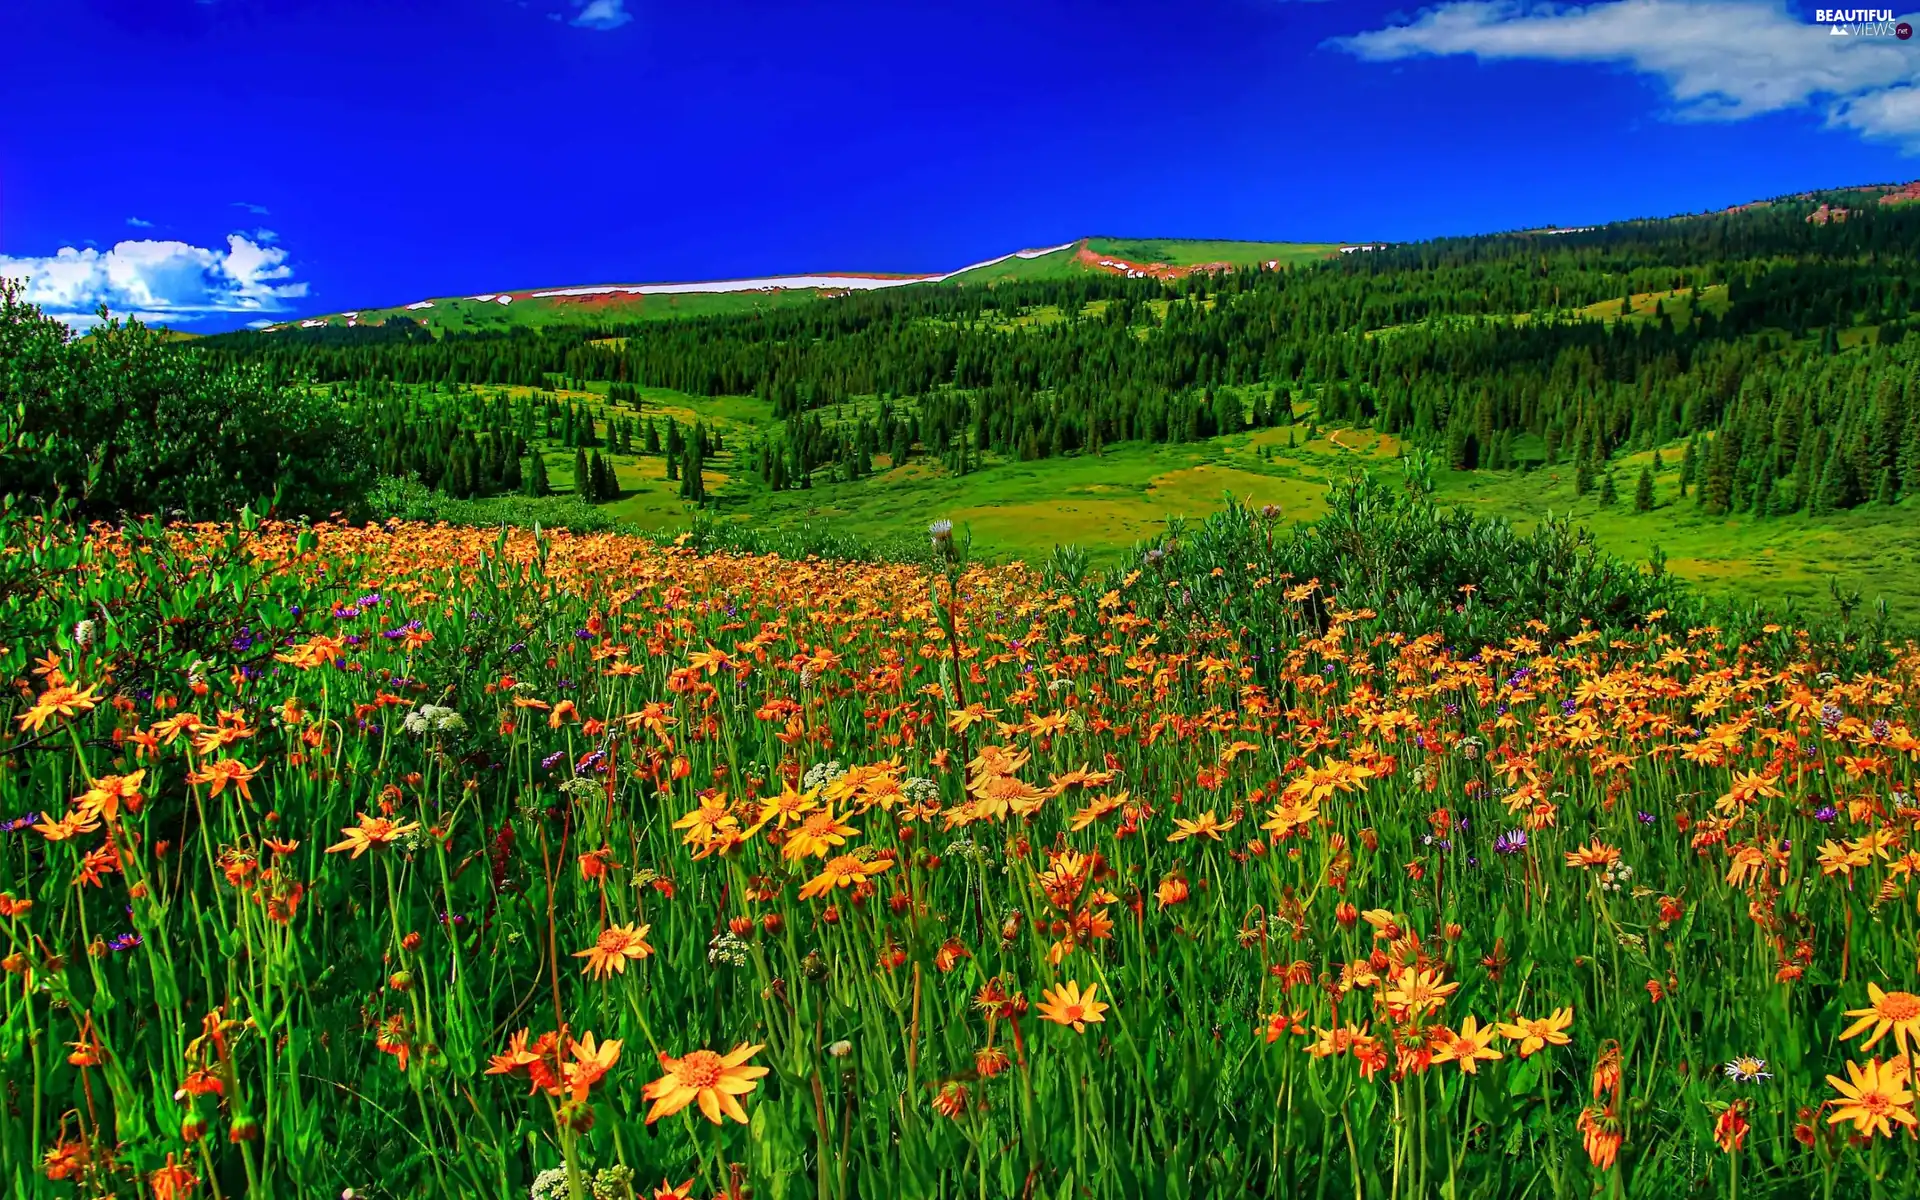 Meadow Wildflowers Spring Flowers Beautiful Views Wallpapers 2560x1600